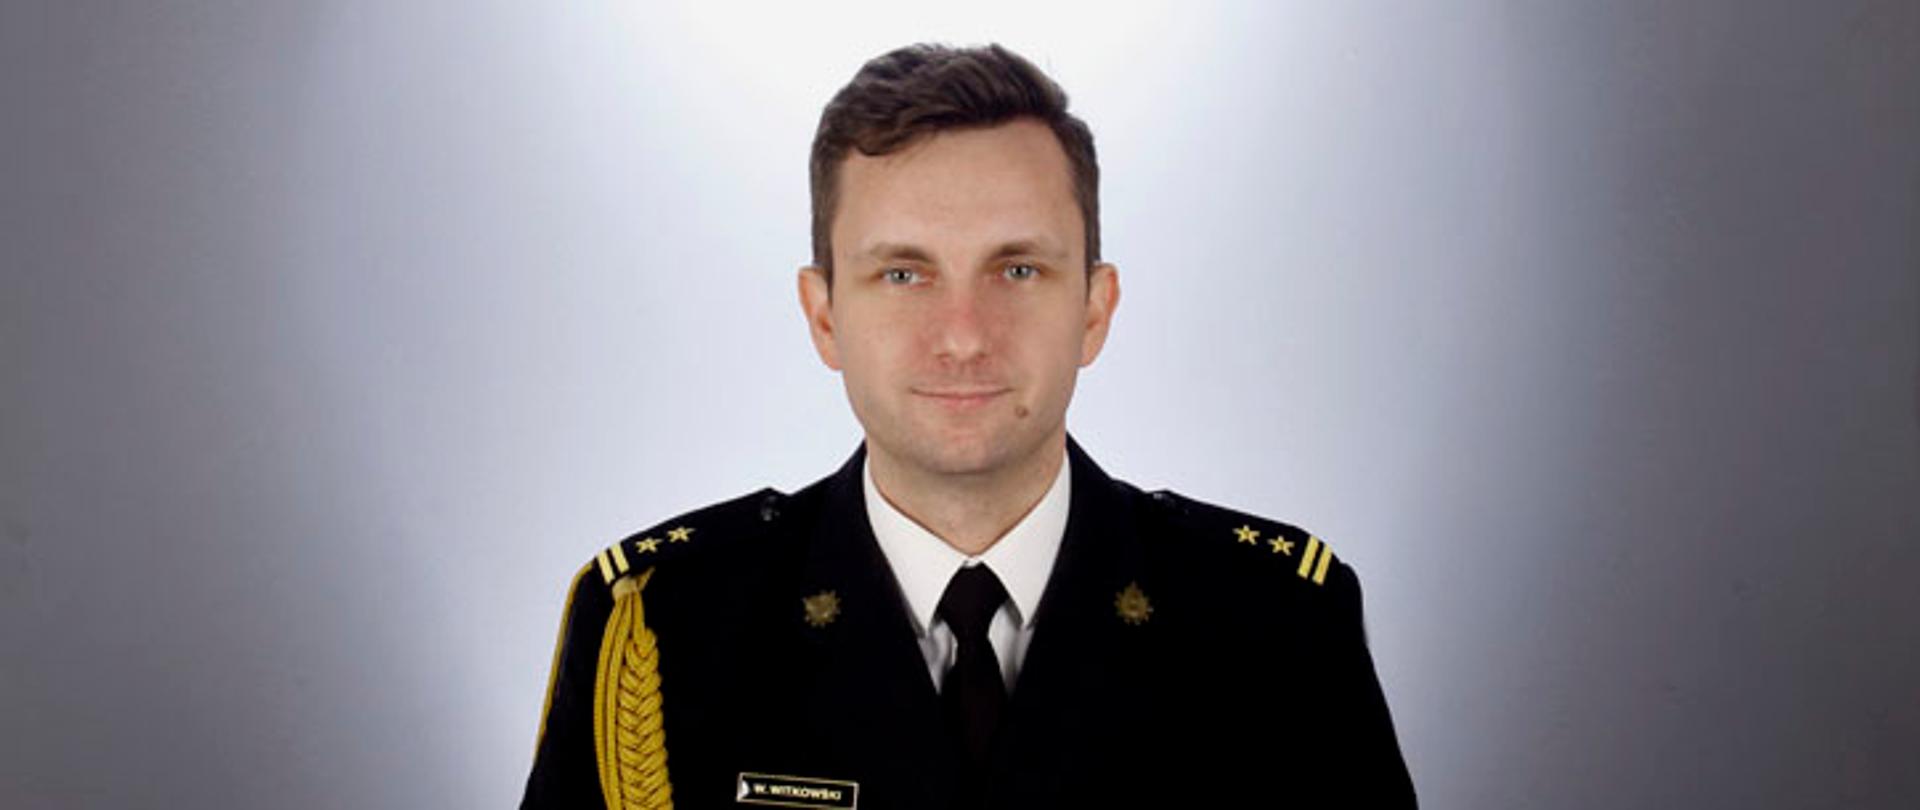 Z-ca Komendanta Powiatowego PSP bryg. Wojciech Witkowski w mundurze galowym